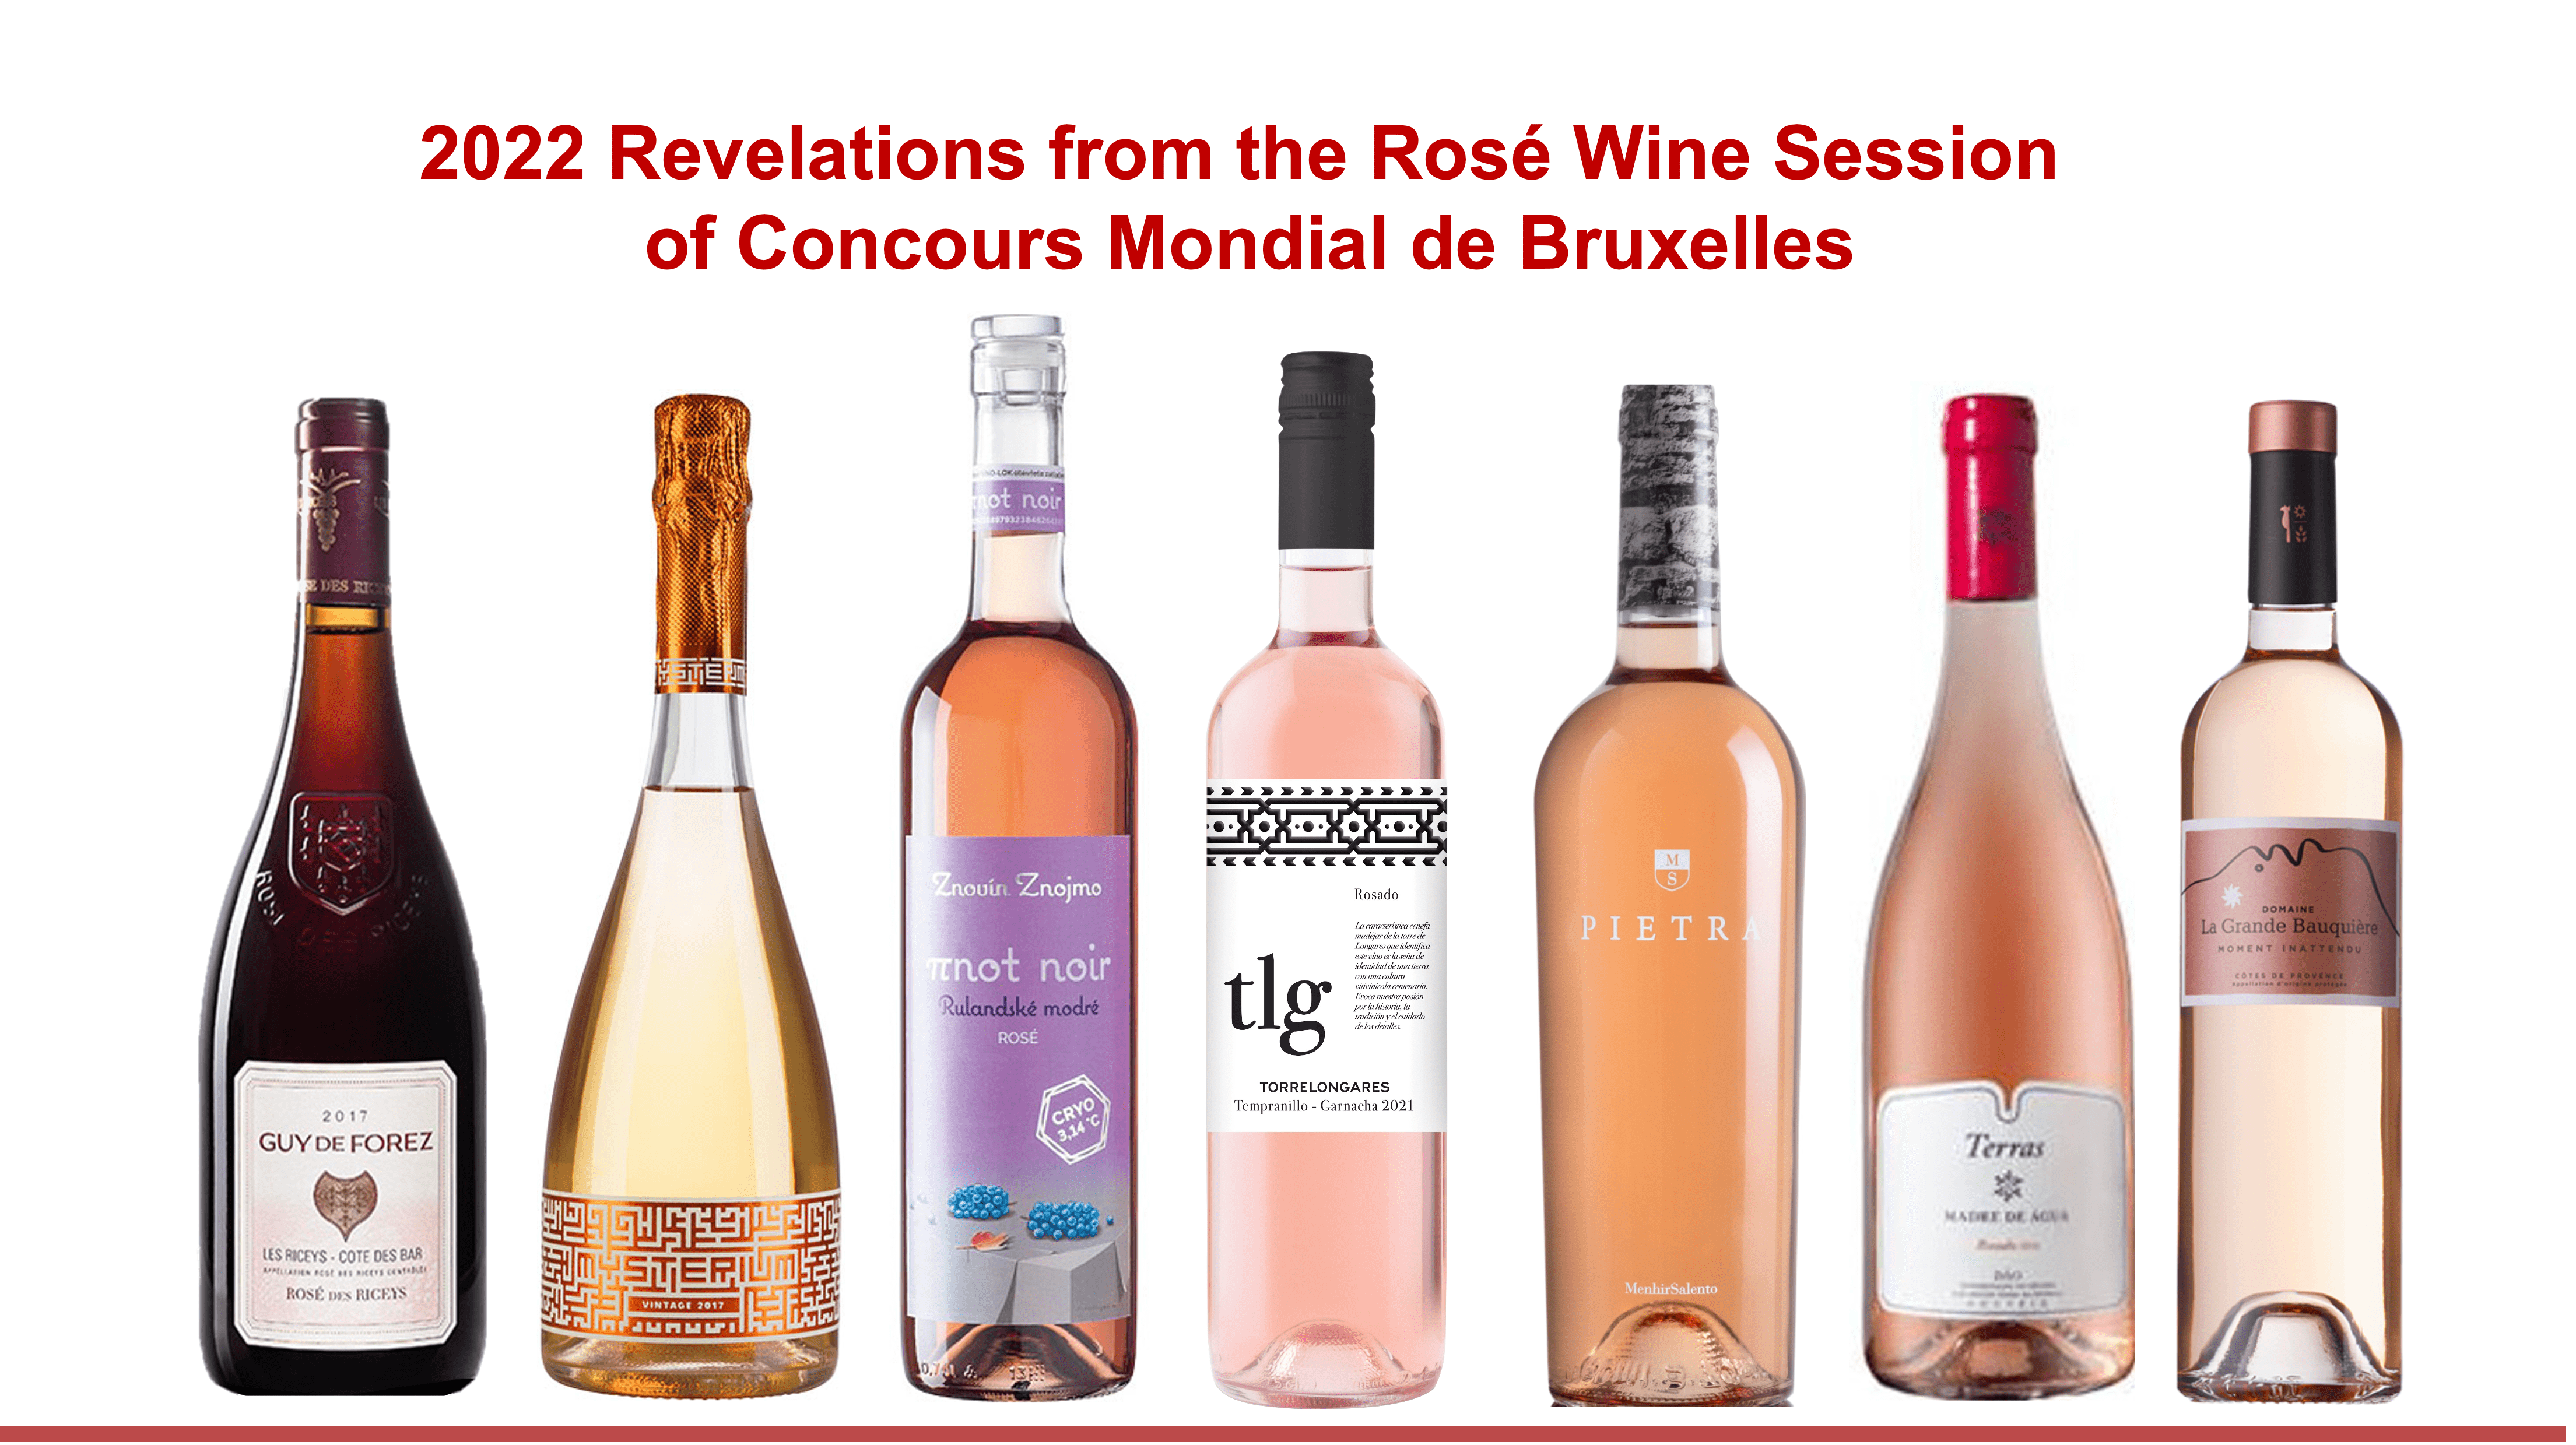 Concours Mondial de Bruxelles reveals the world’s best rosé wines